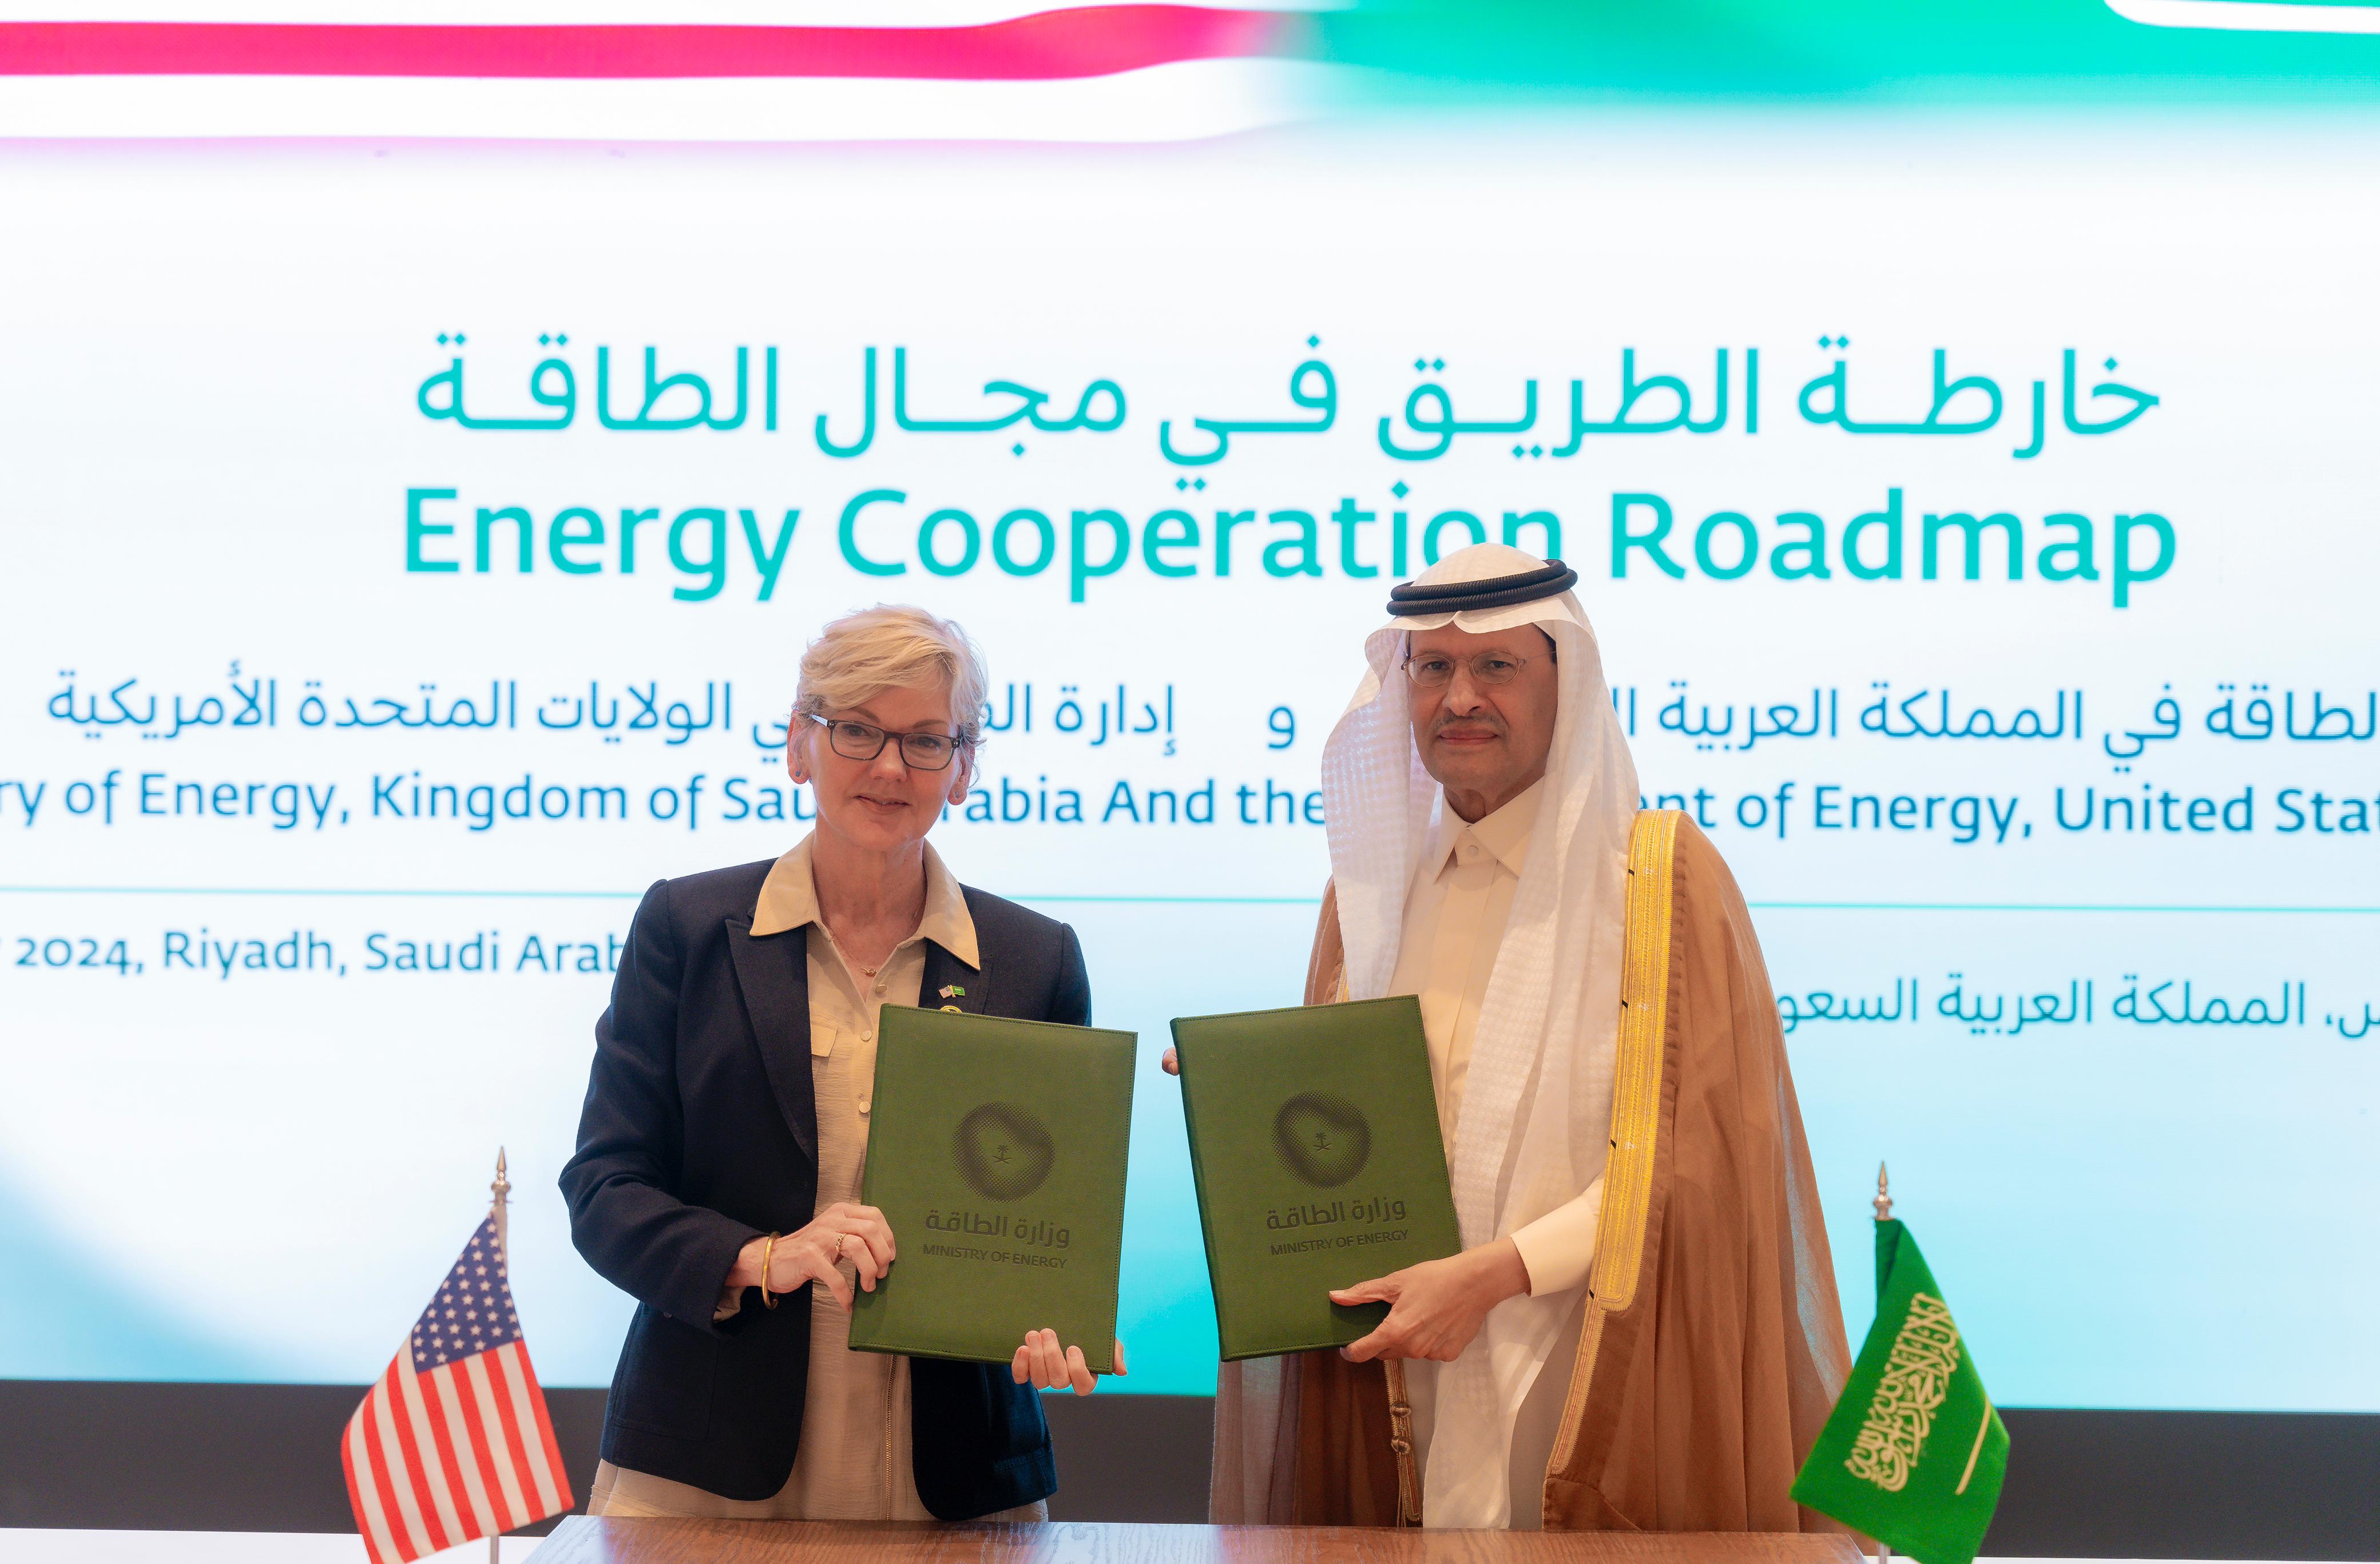 سمو وزير الطاقة يجتمع مع وزيرة الطاقة الأمريكية ويوقعان خارطة طريق للتعاون في مجال الطاقة بين البلدين